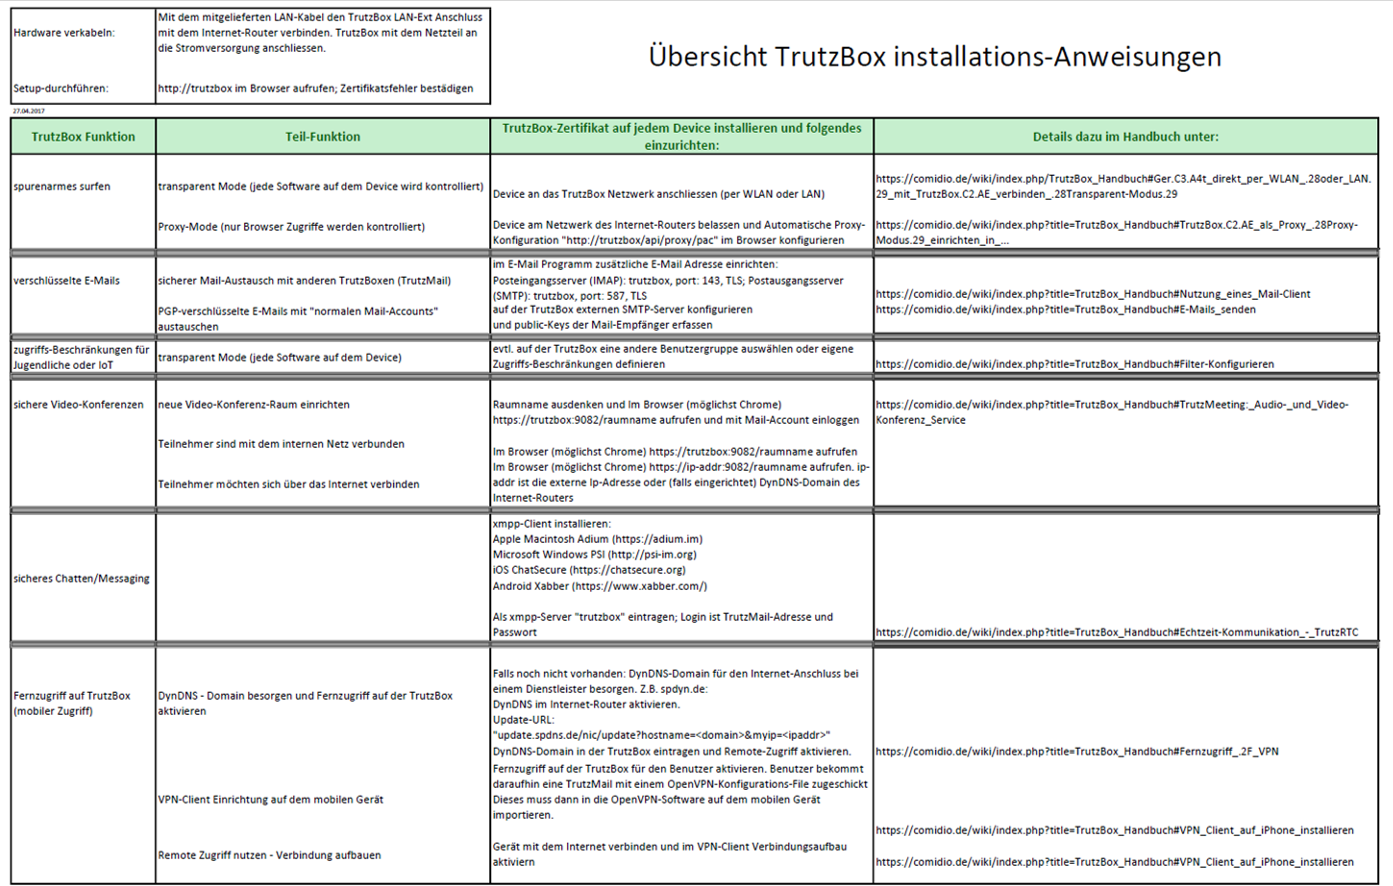 TrutzBox installations-Anweisung Übersicht-1.1 DC.png